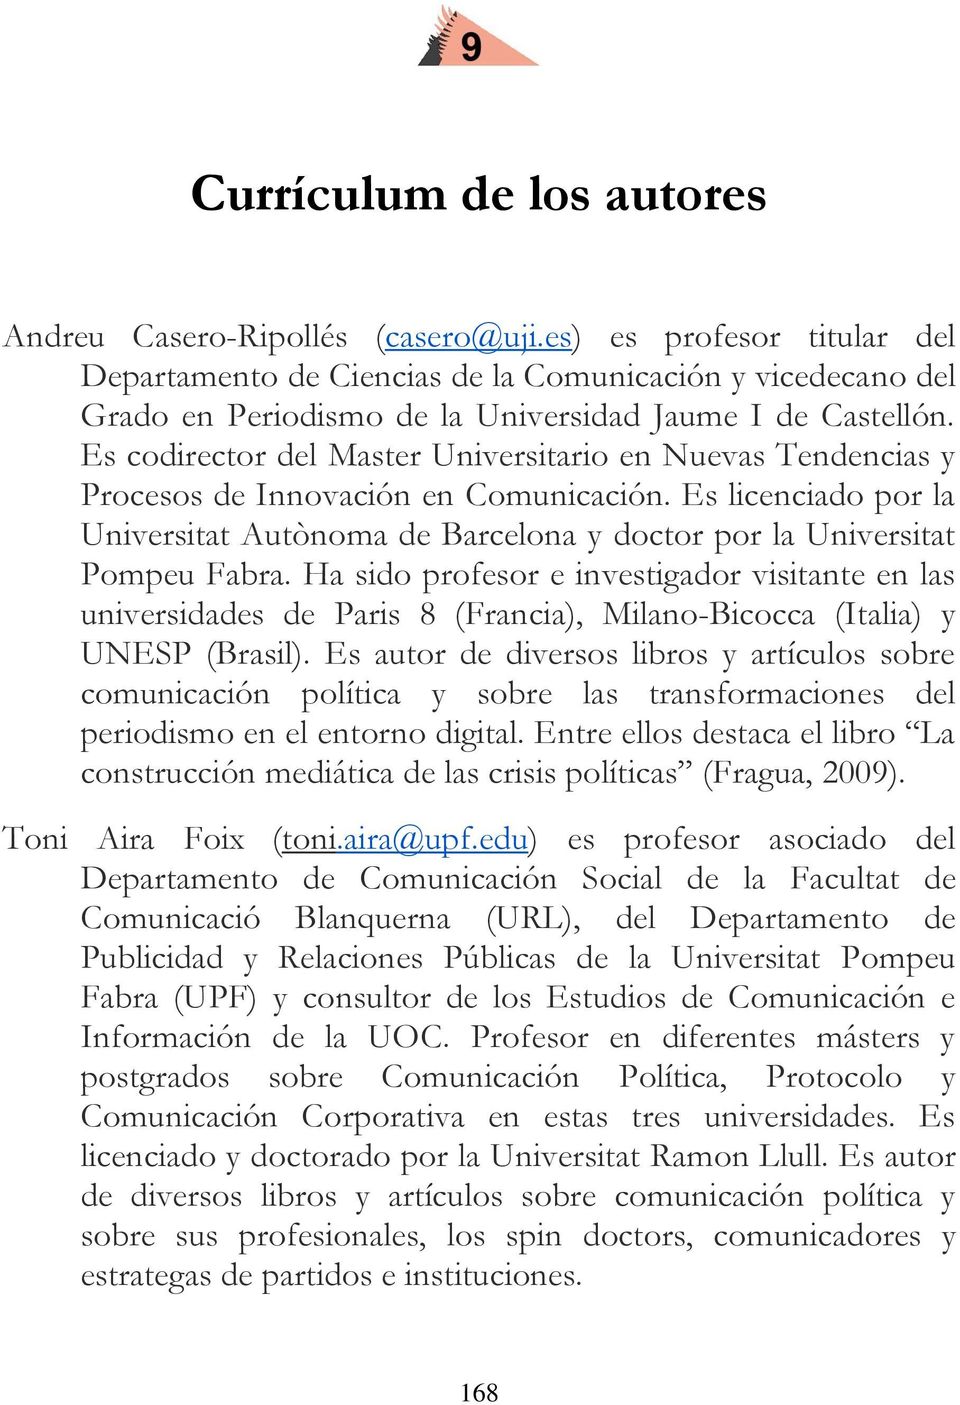 Es codirector del Master Universitario en Nuevas Tendencias y Procesos de Innovación en Comunicación. Es licenciado por la Universitat Autònoma de Barcelona y doctor por la Universitat Pompeu Fabra.